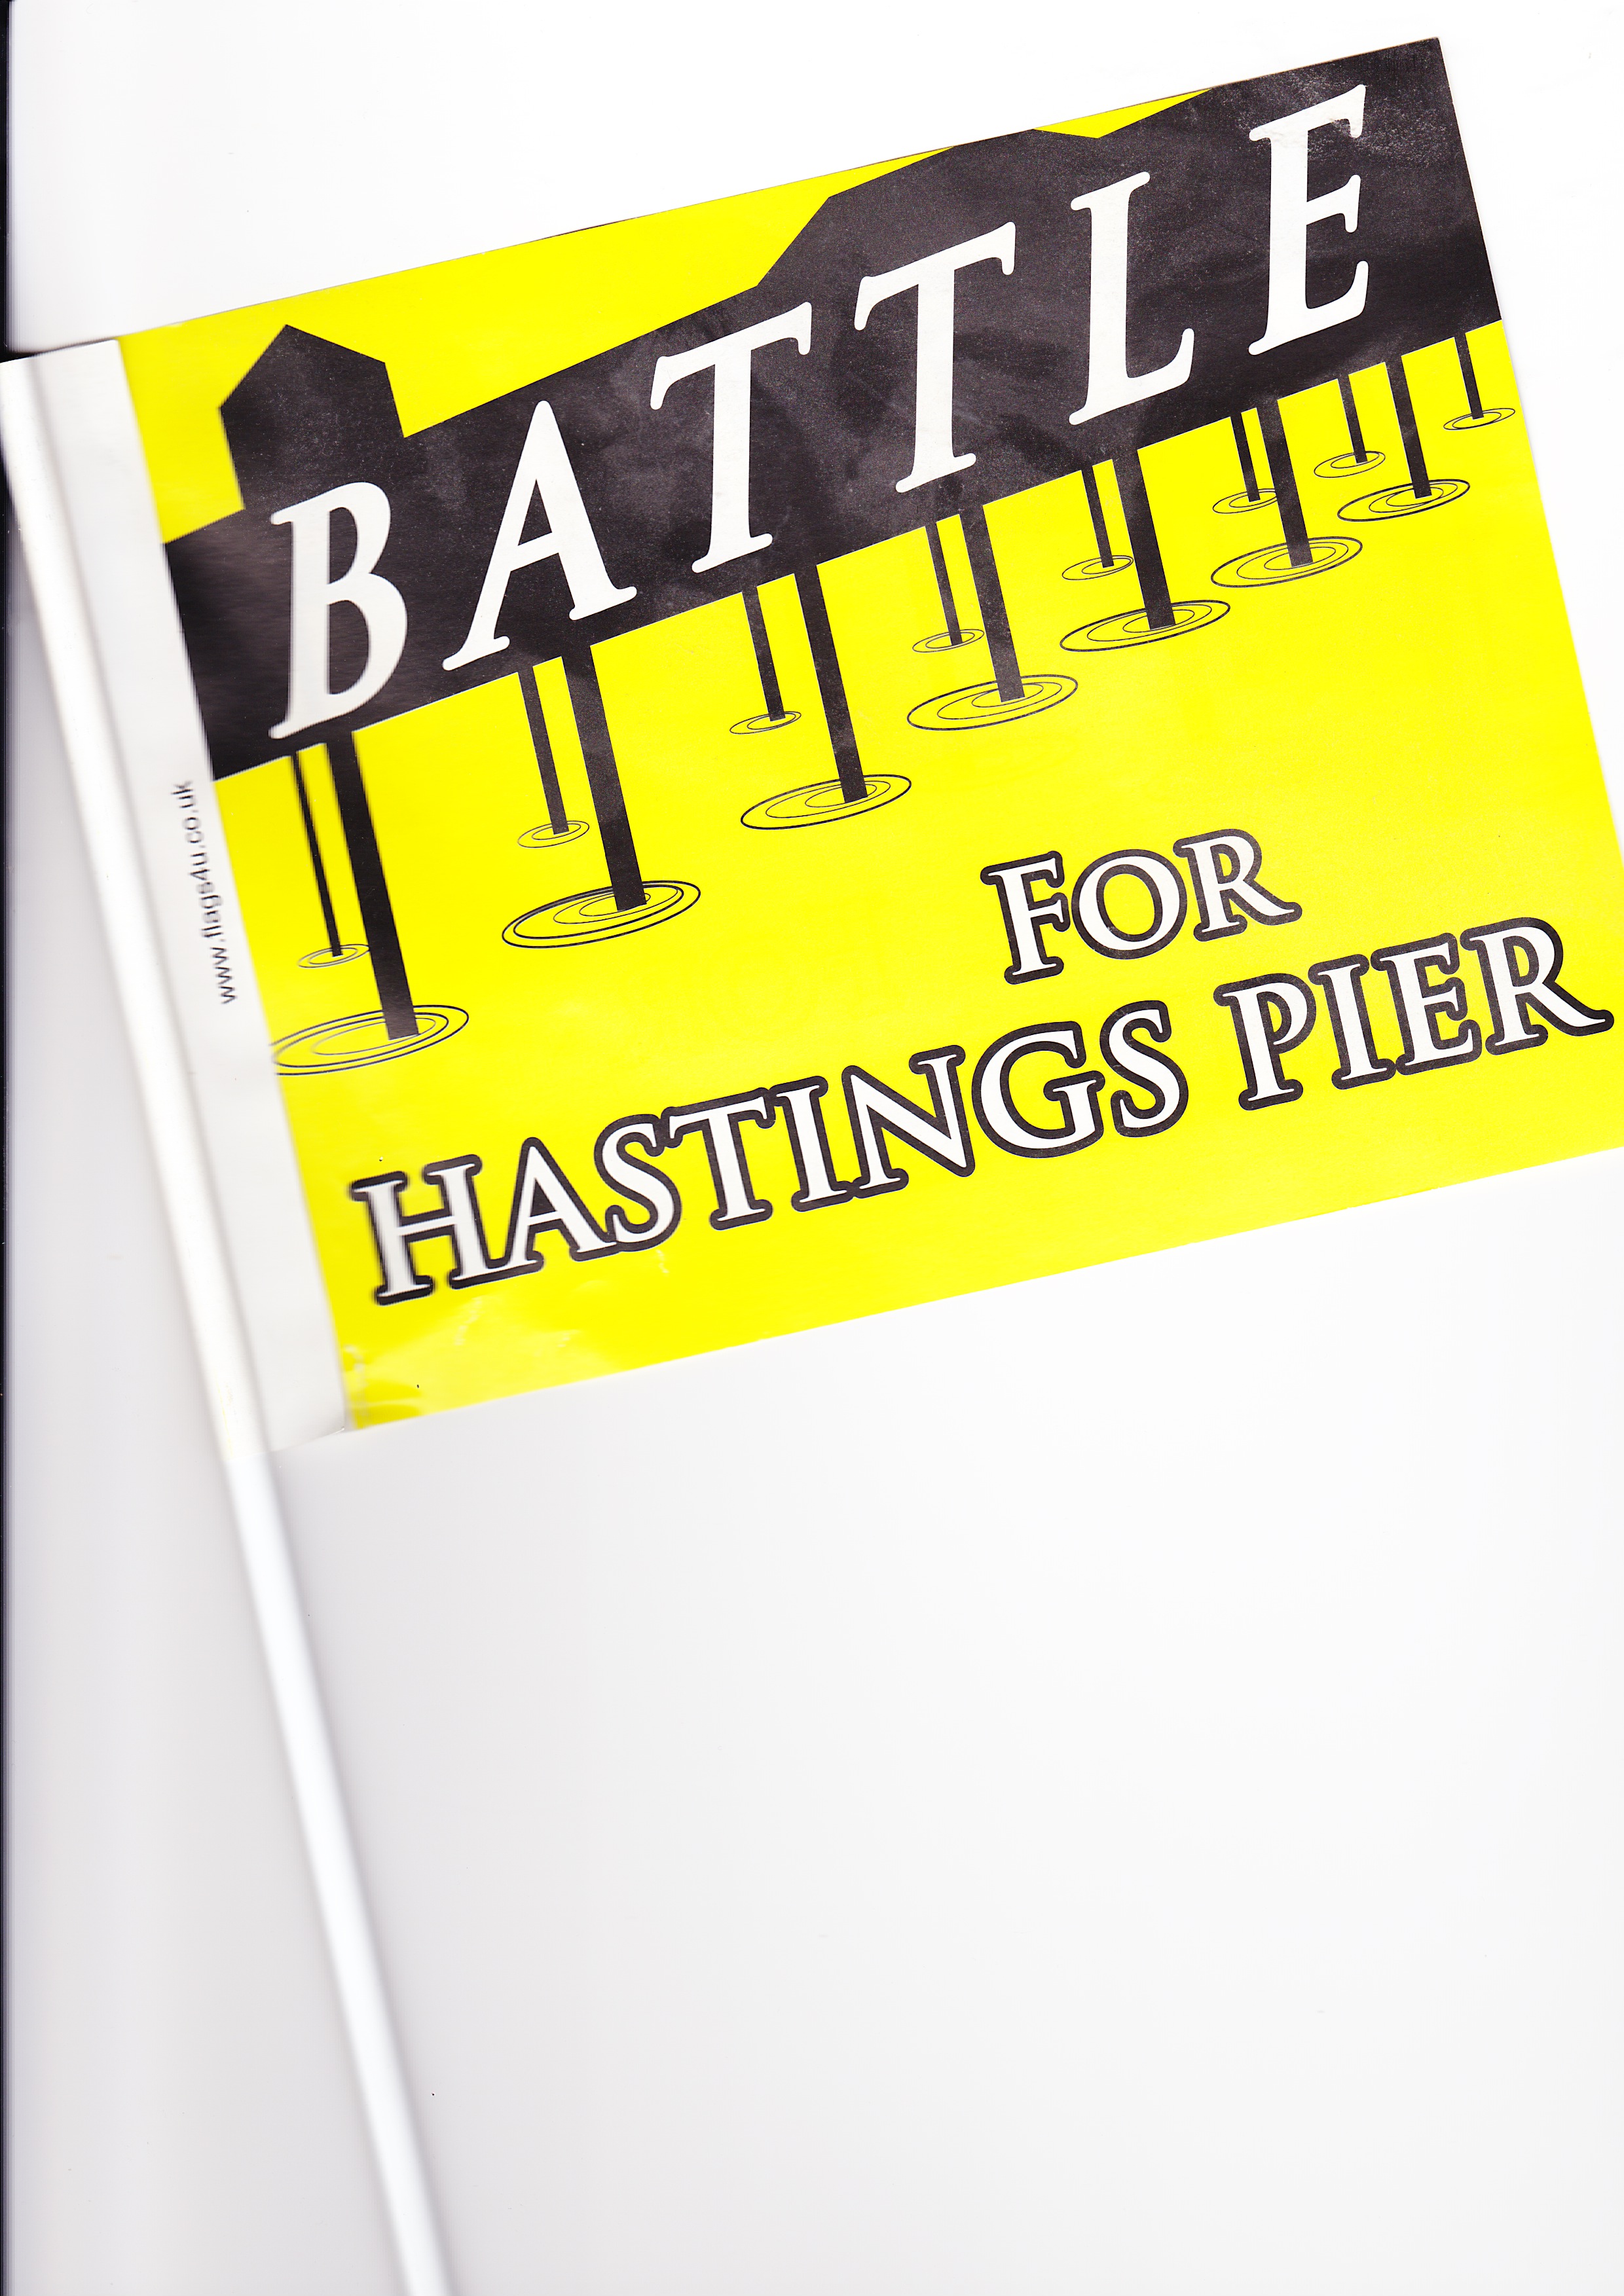 Battle for Hastings Pier flag